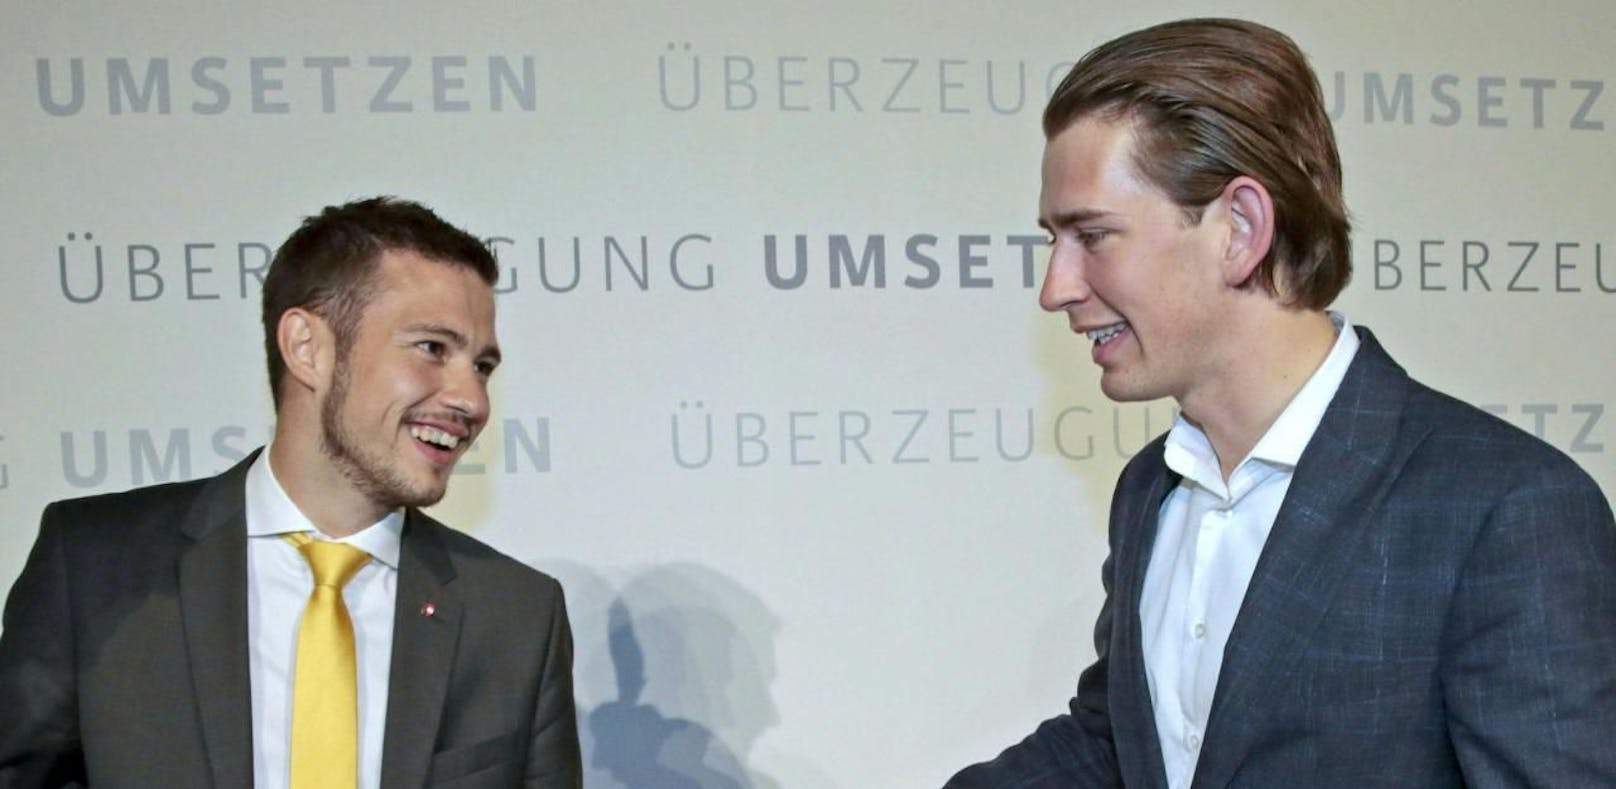 Sebastian Schuschnig mit Sebastian Kurz im Jahr 2014. Damals war Schuschnig Landesobmann der Jungen ÖVP Kärnten, Kurz war Außenminister.